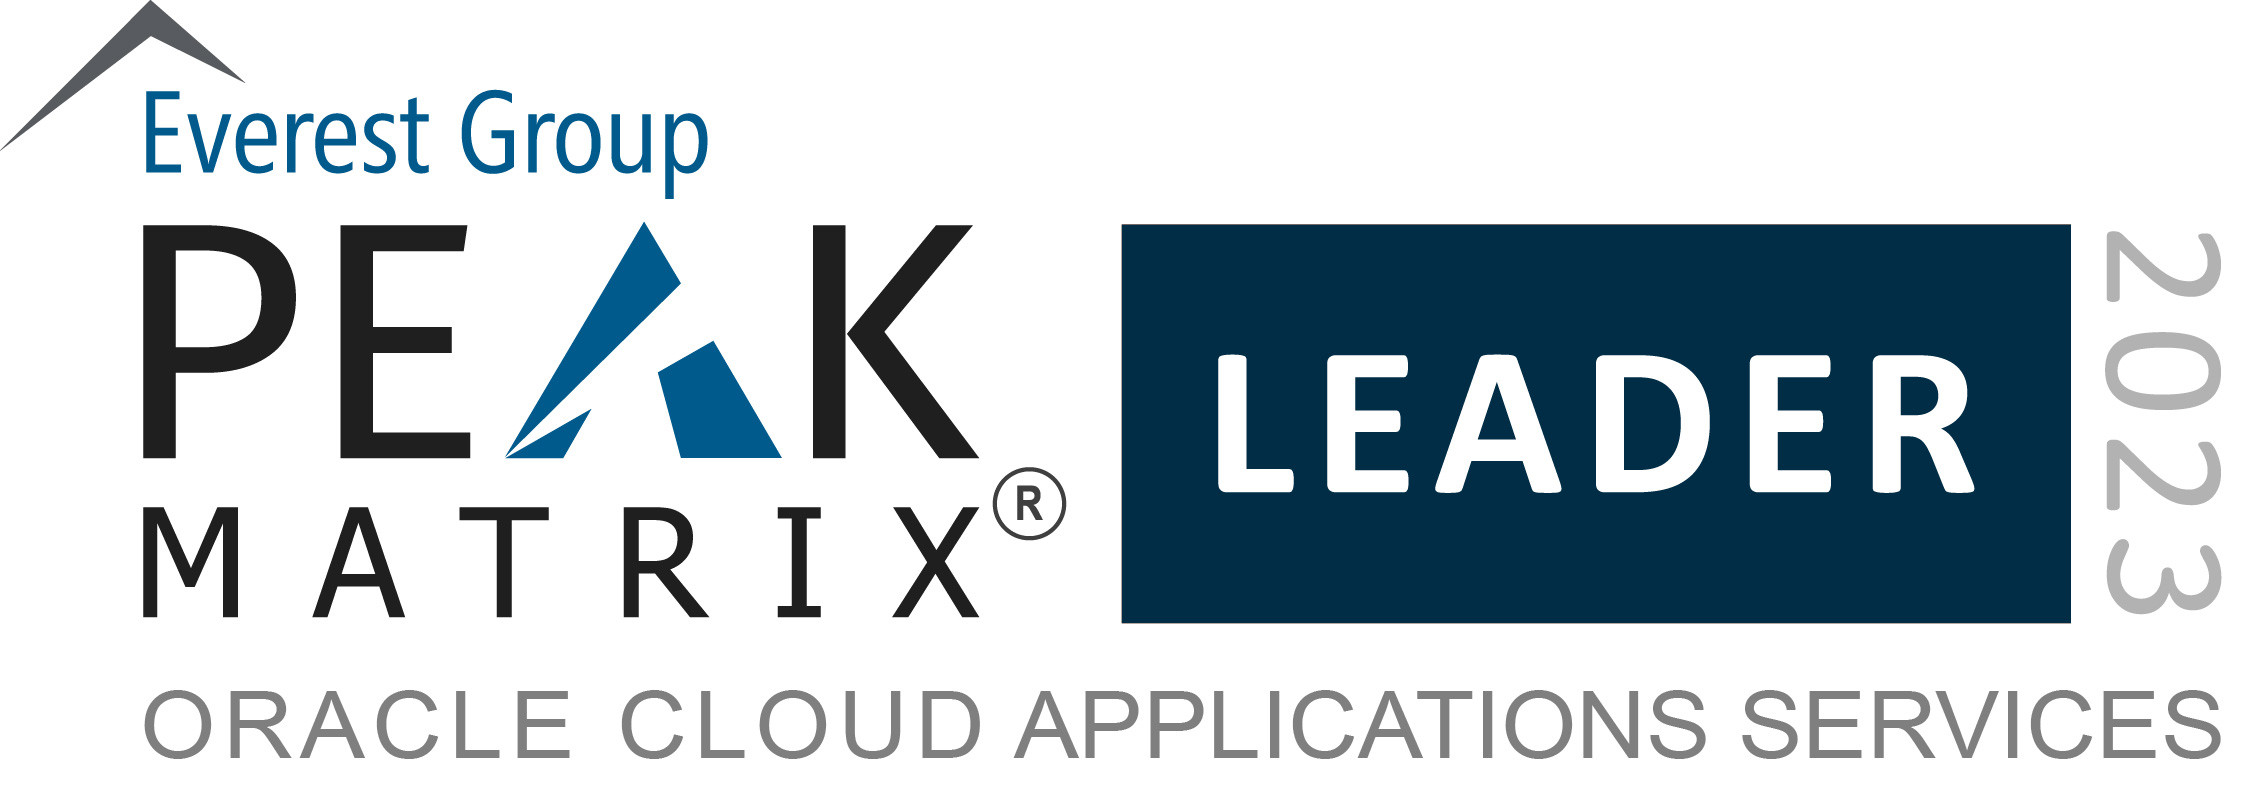 PEAK Matrix 甲骨文云应用程序服务图片